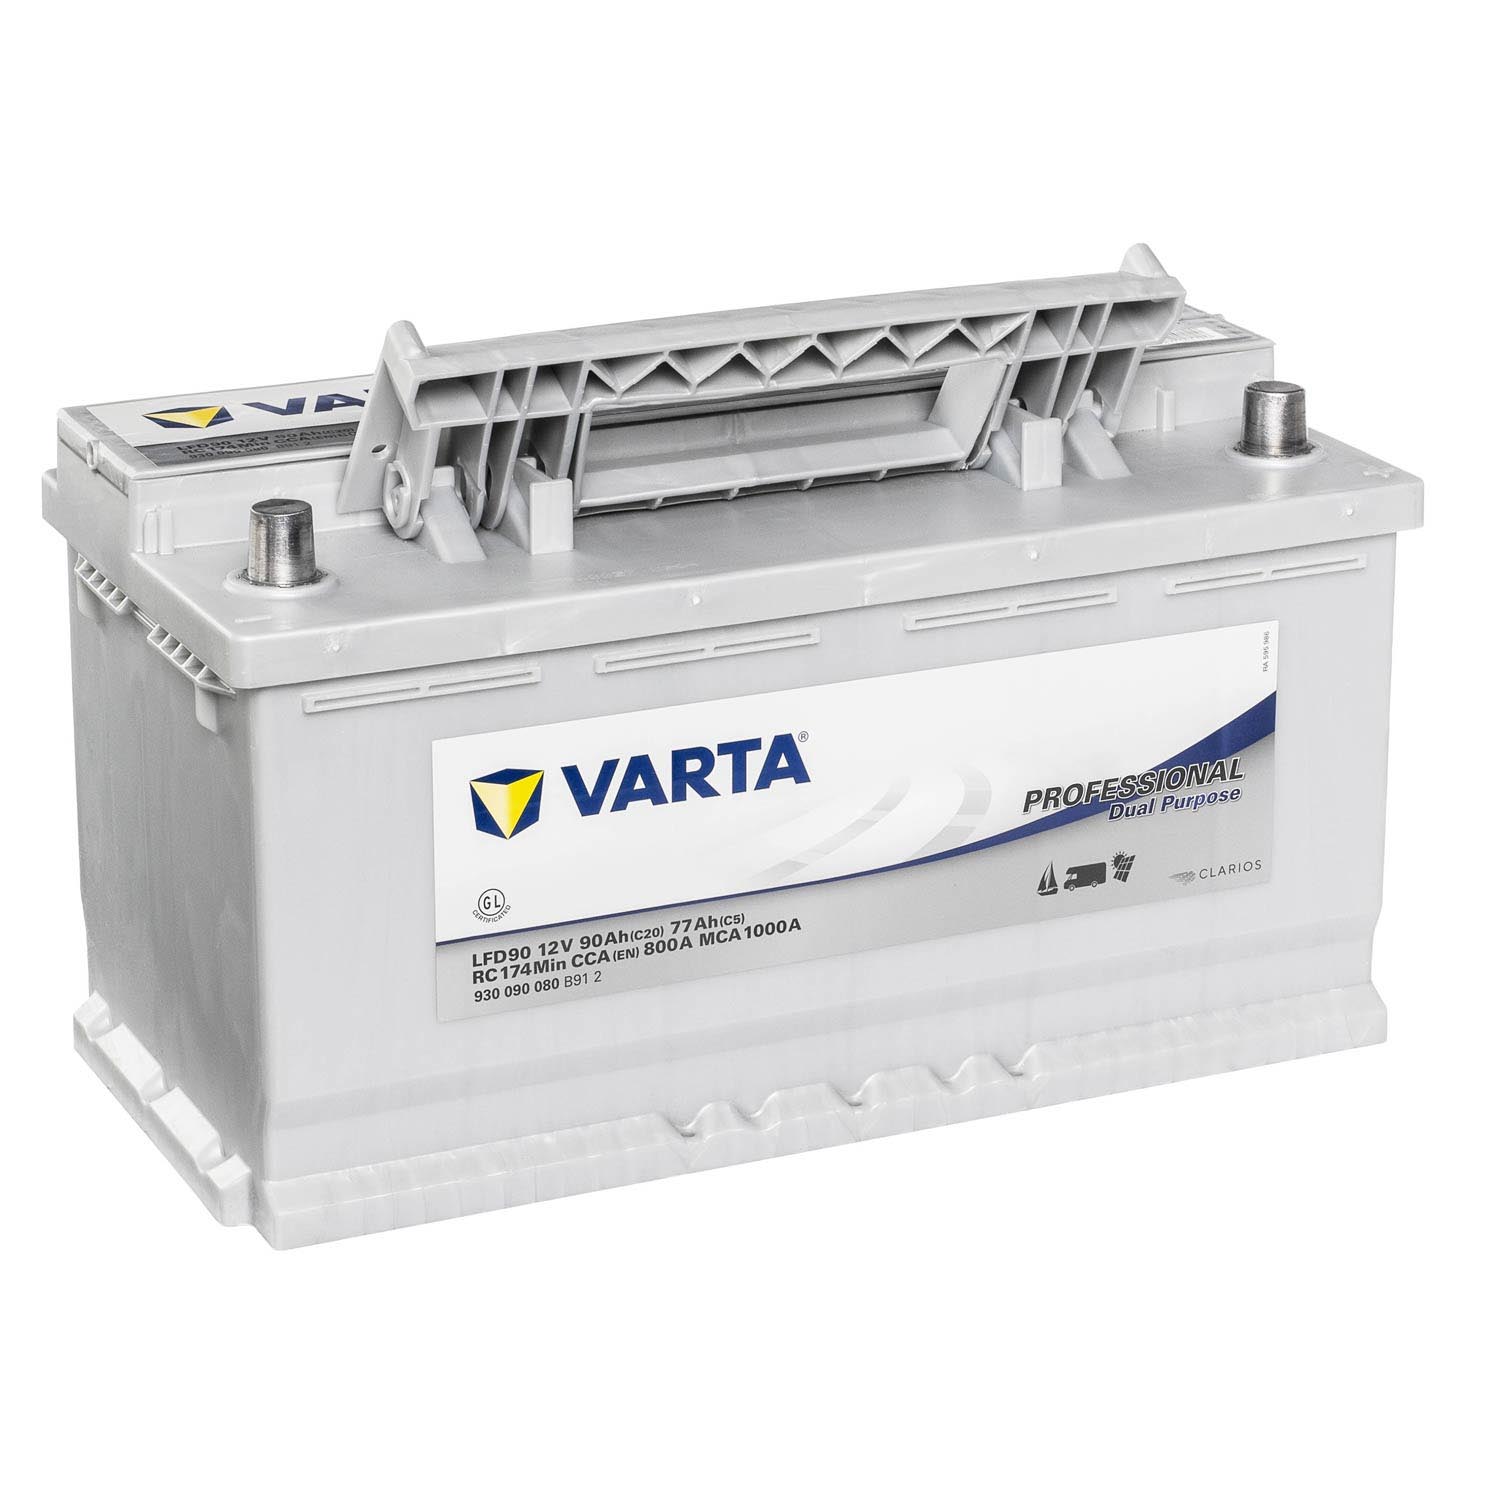 VARTA Professional DeepCycle Versorgungsbatterie LFD90 12V 90Ah